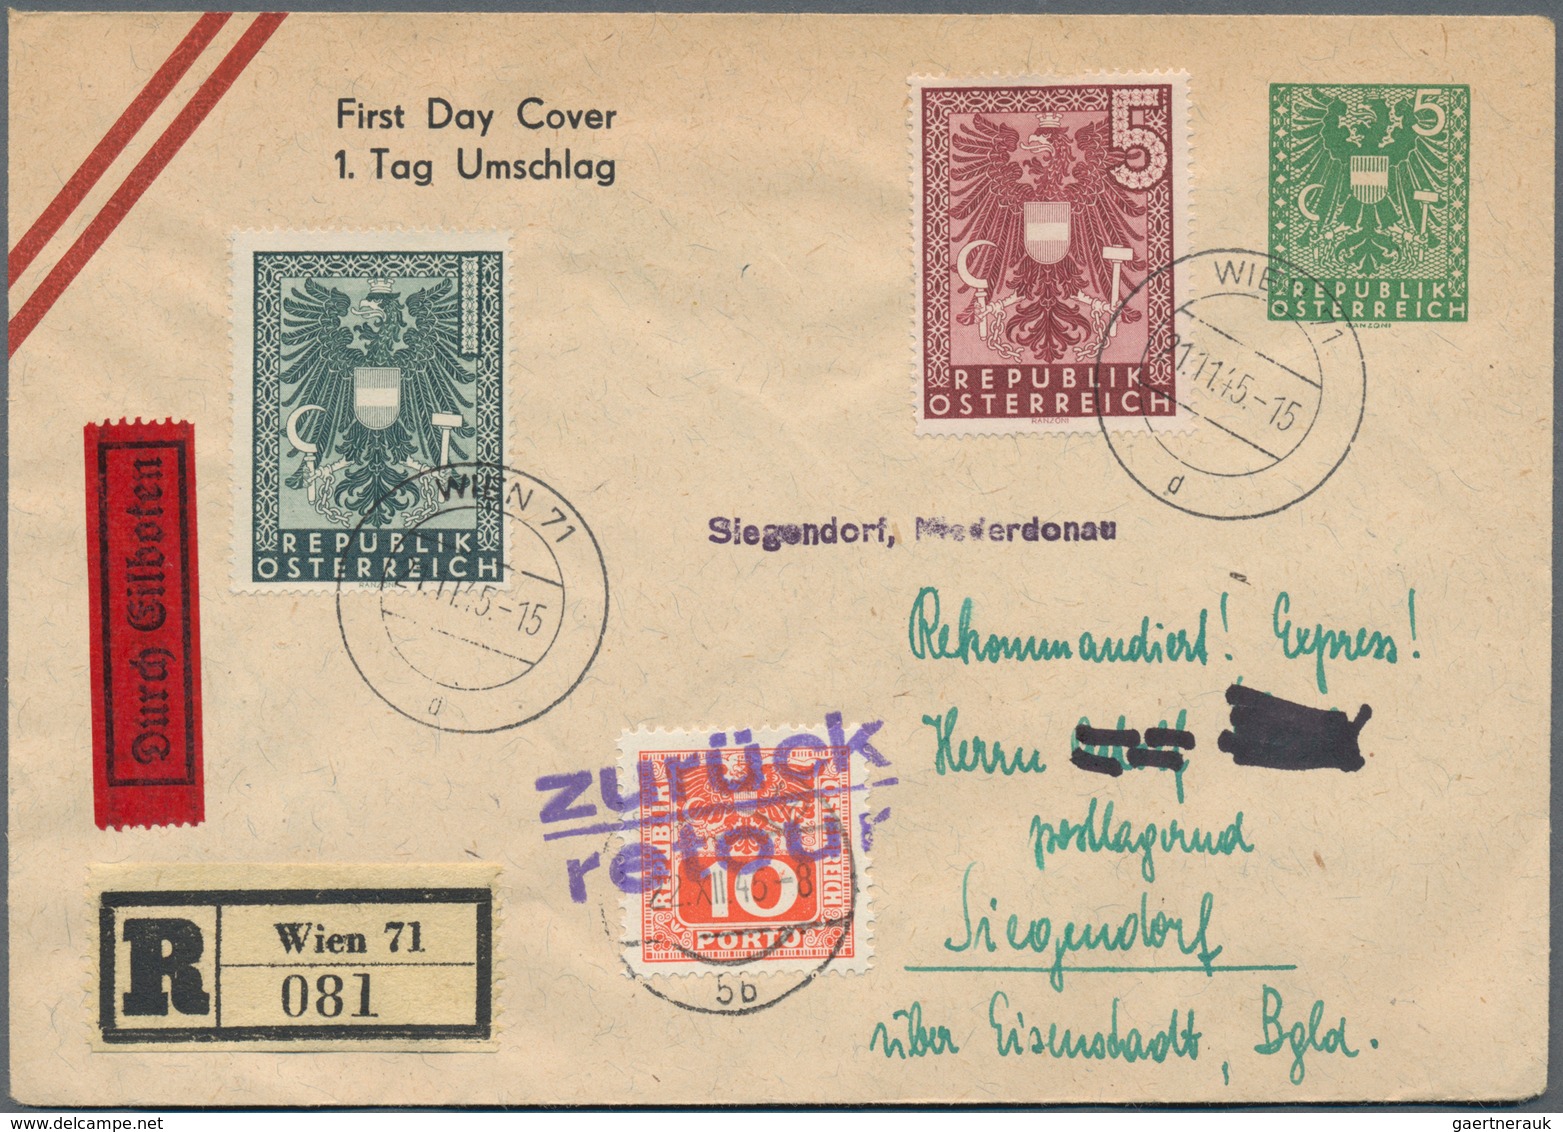 Österreich: 1945/1957, Partie von ca. 71 Briefen und Karten mit nur mittleren und besseren Stücken,